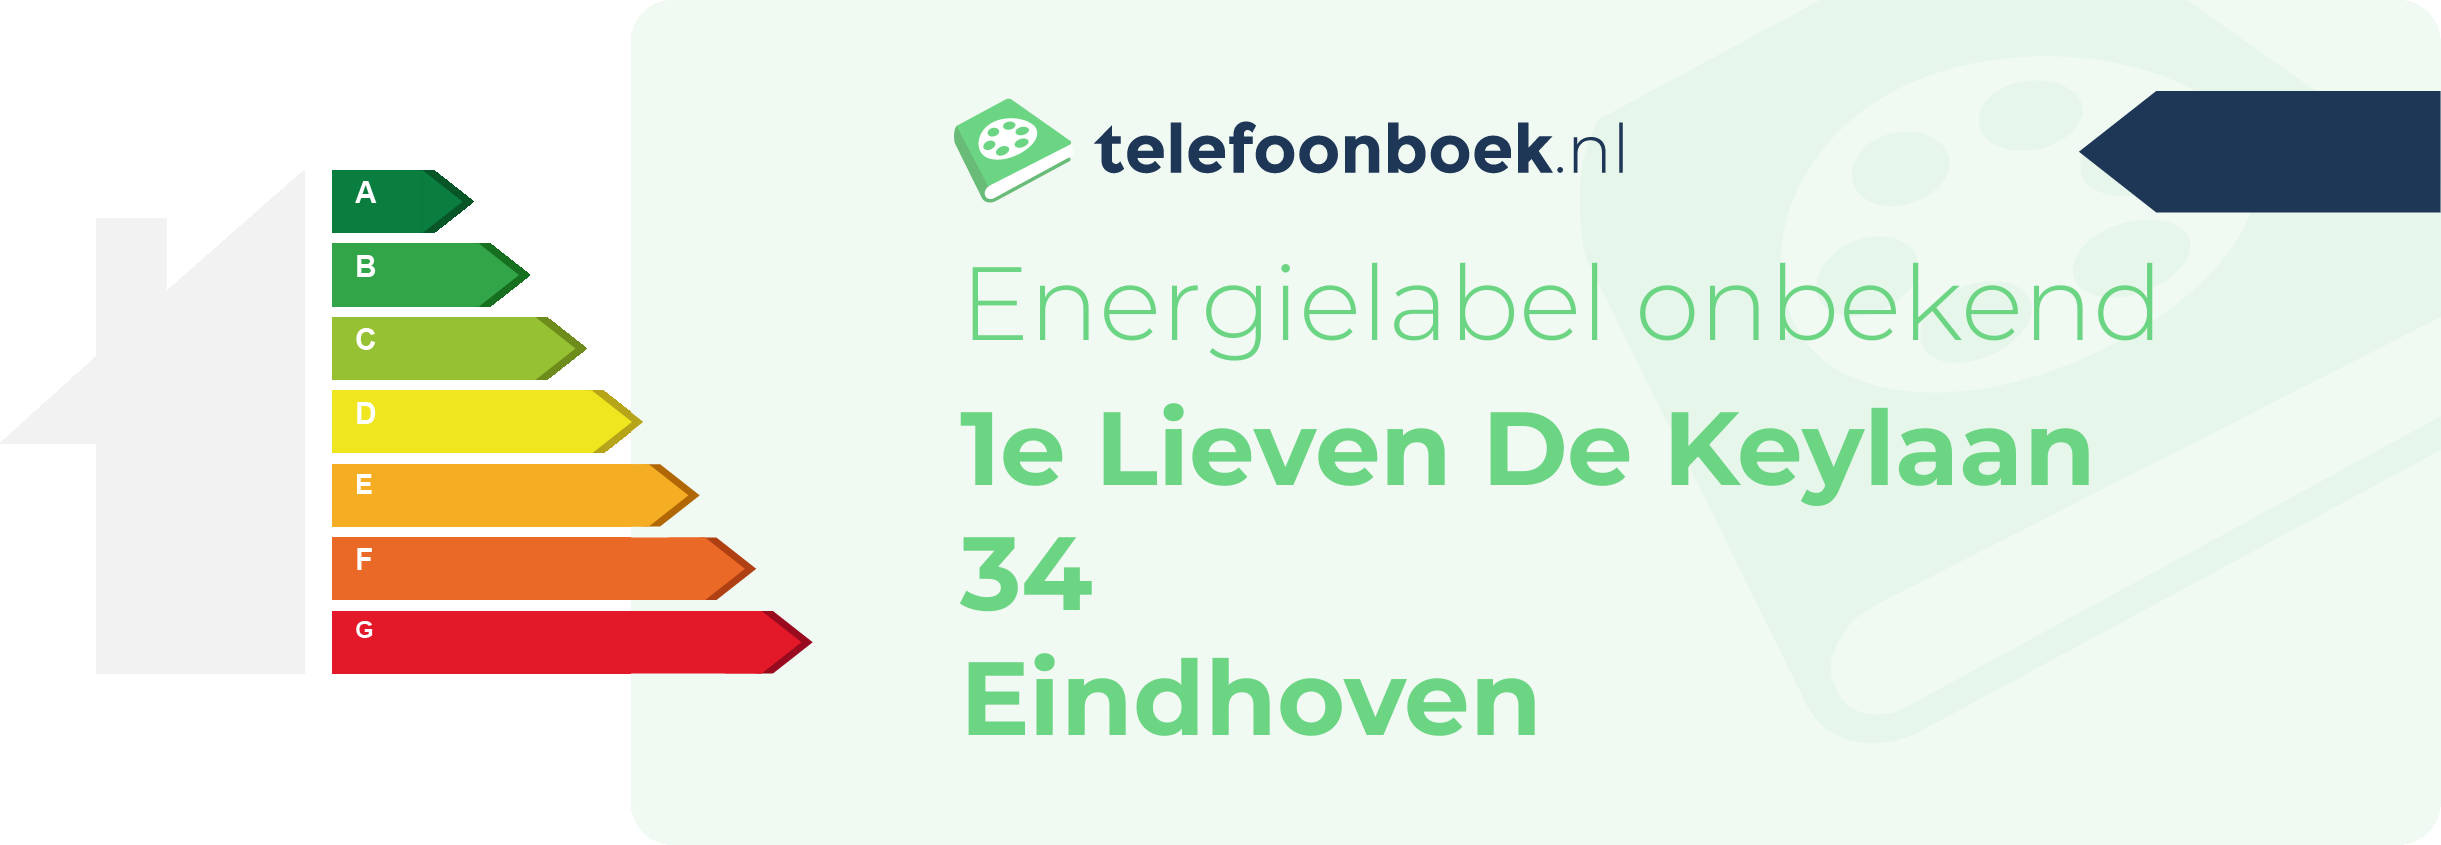 Energielabel 1e Lieven De Keylaan 34 Eindhoven